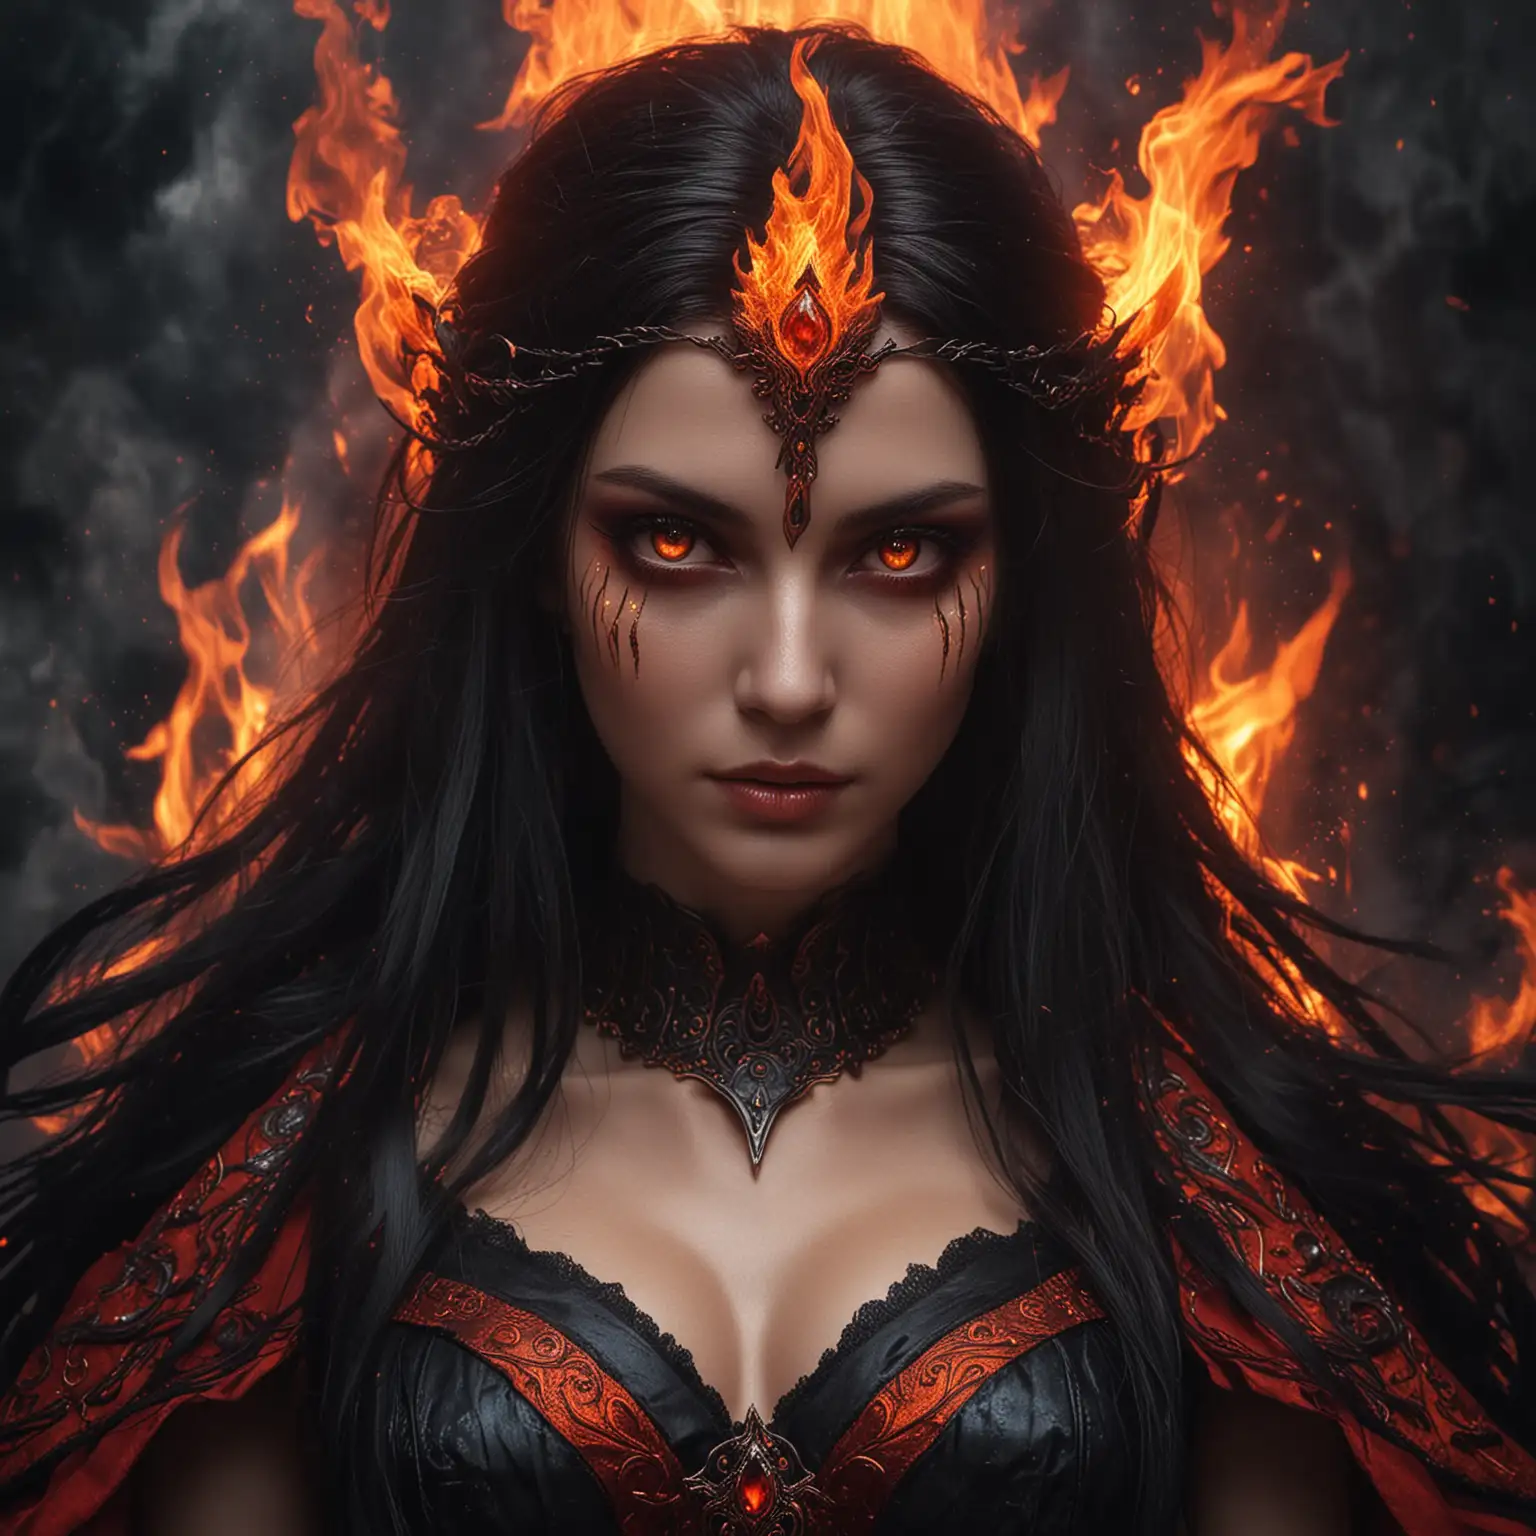 Enchanting Goddess of Fire with Mesmerizing Black and Orange Eyes